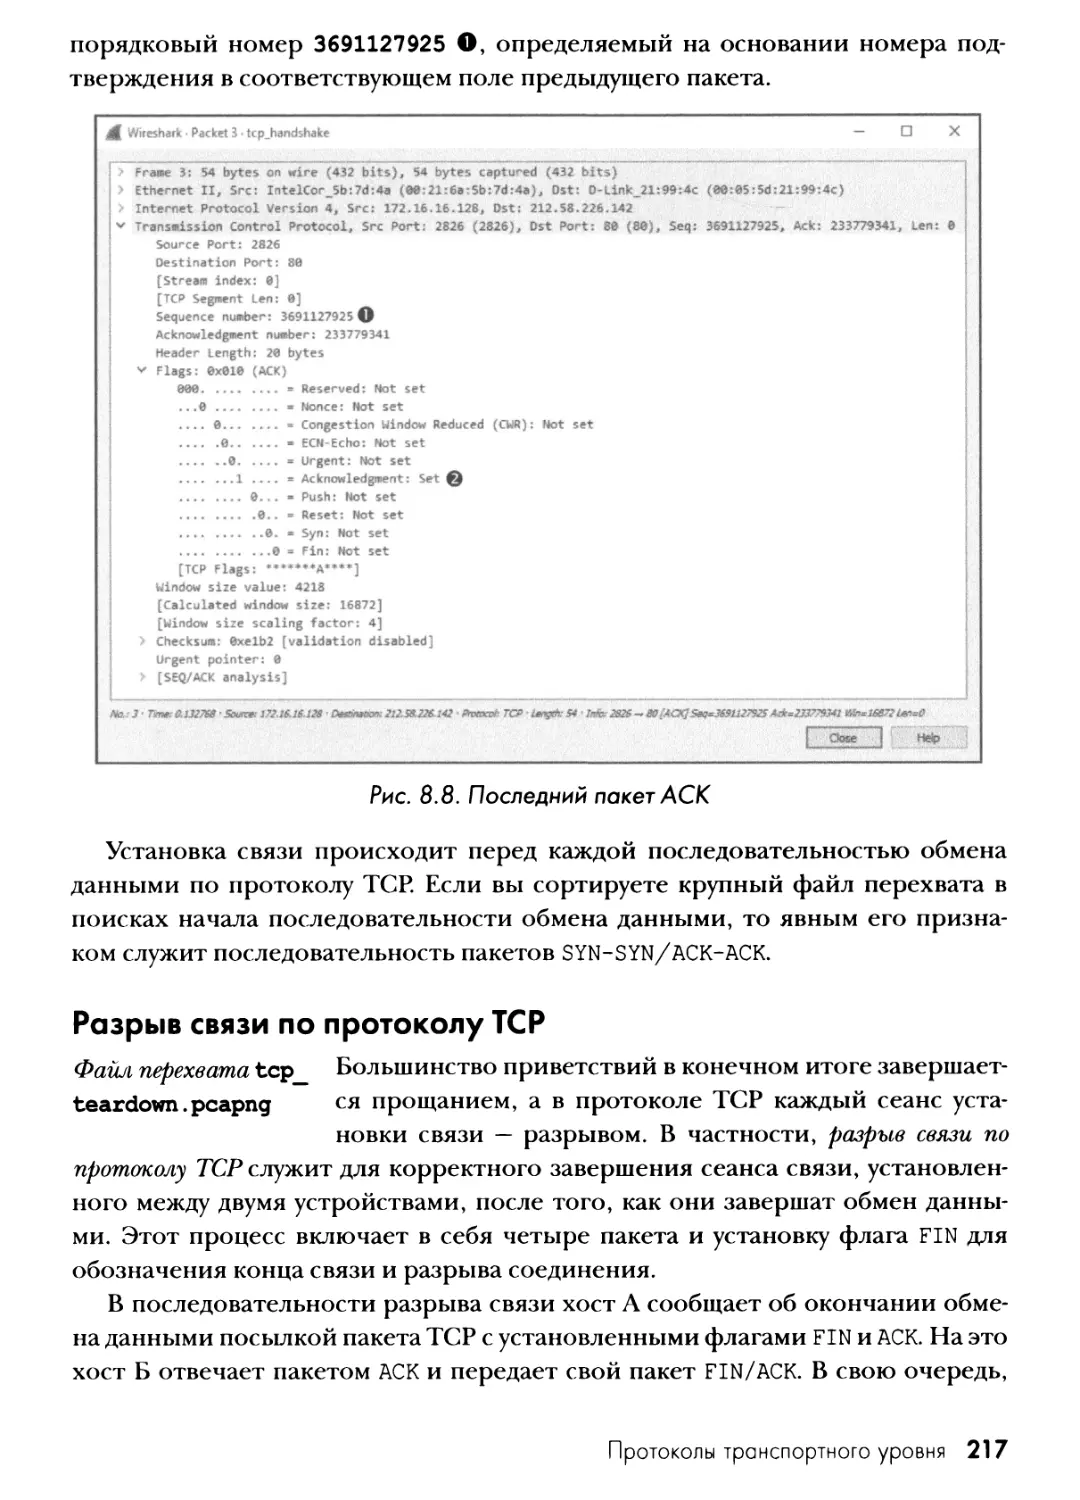 Разрыв связи по протоколу TCP